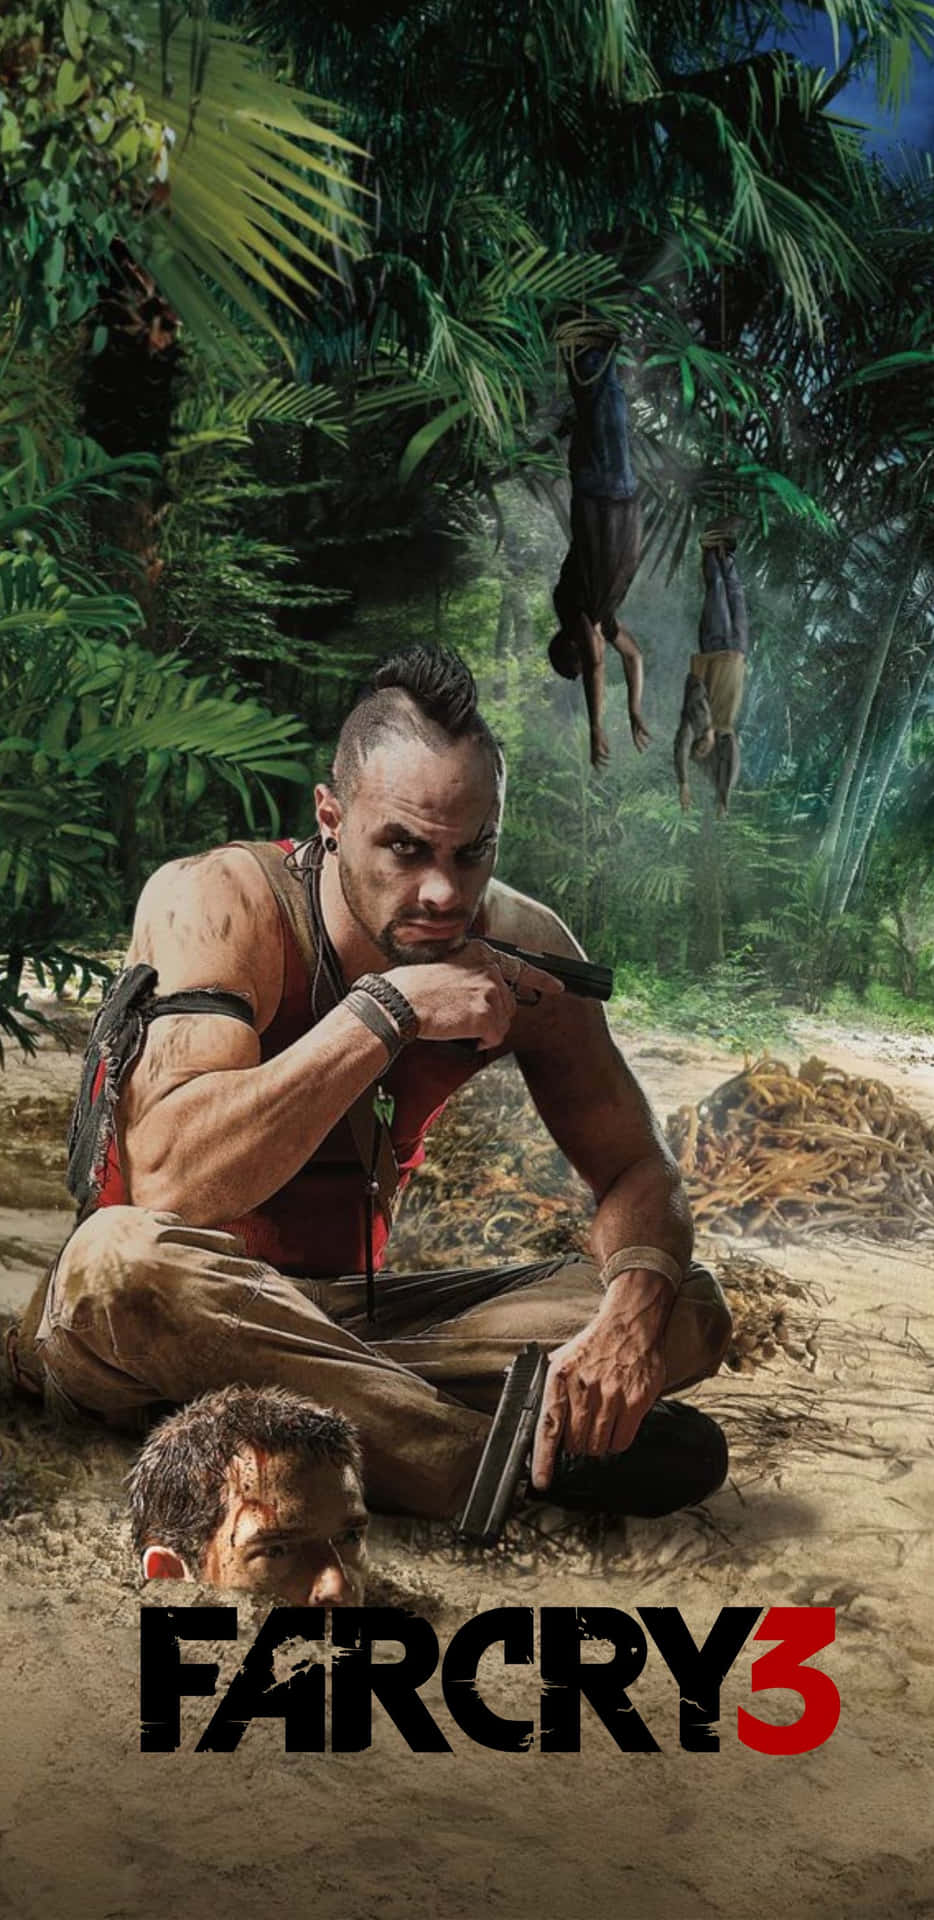 Sumérgeteen Los Impresionantes Visuales De Far Cry 3 Con El Pixel 3xl.